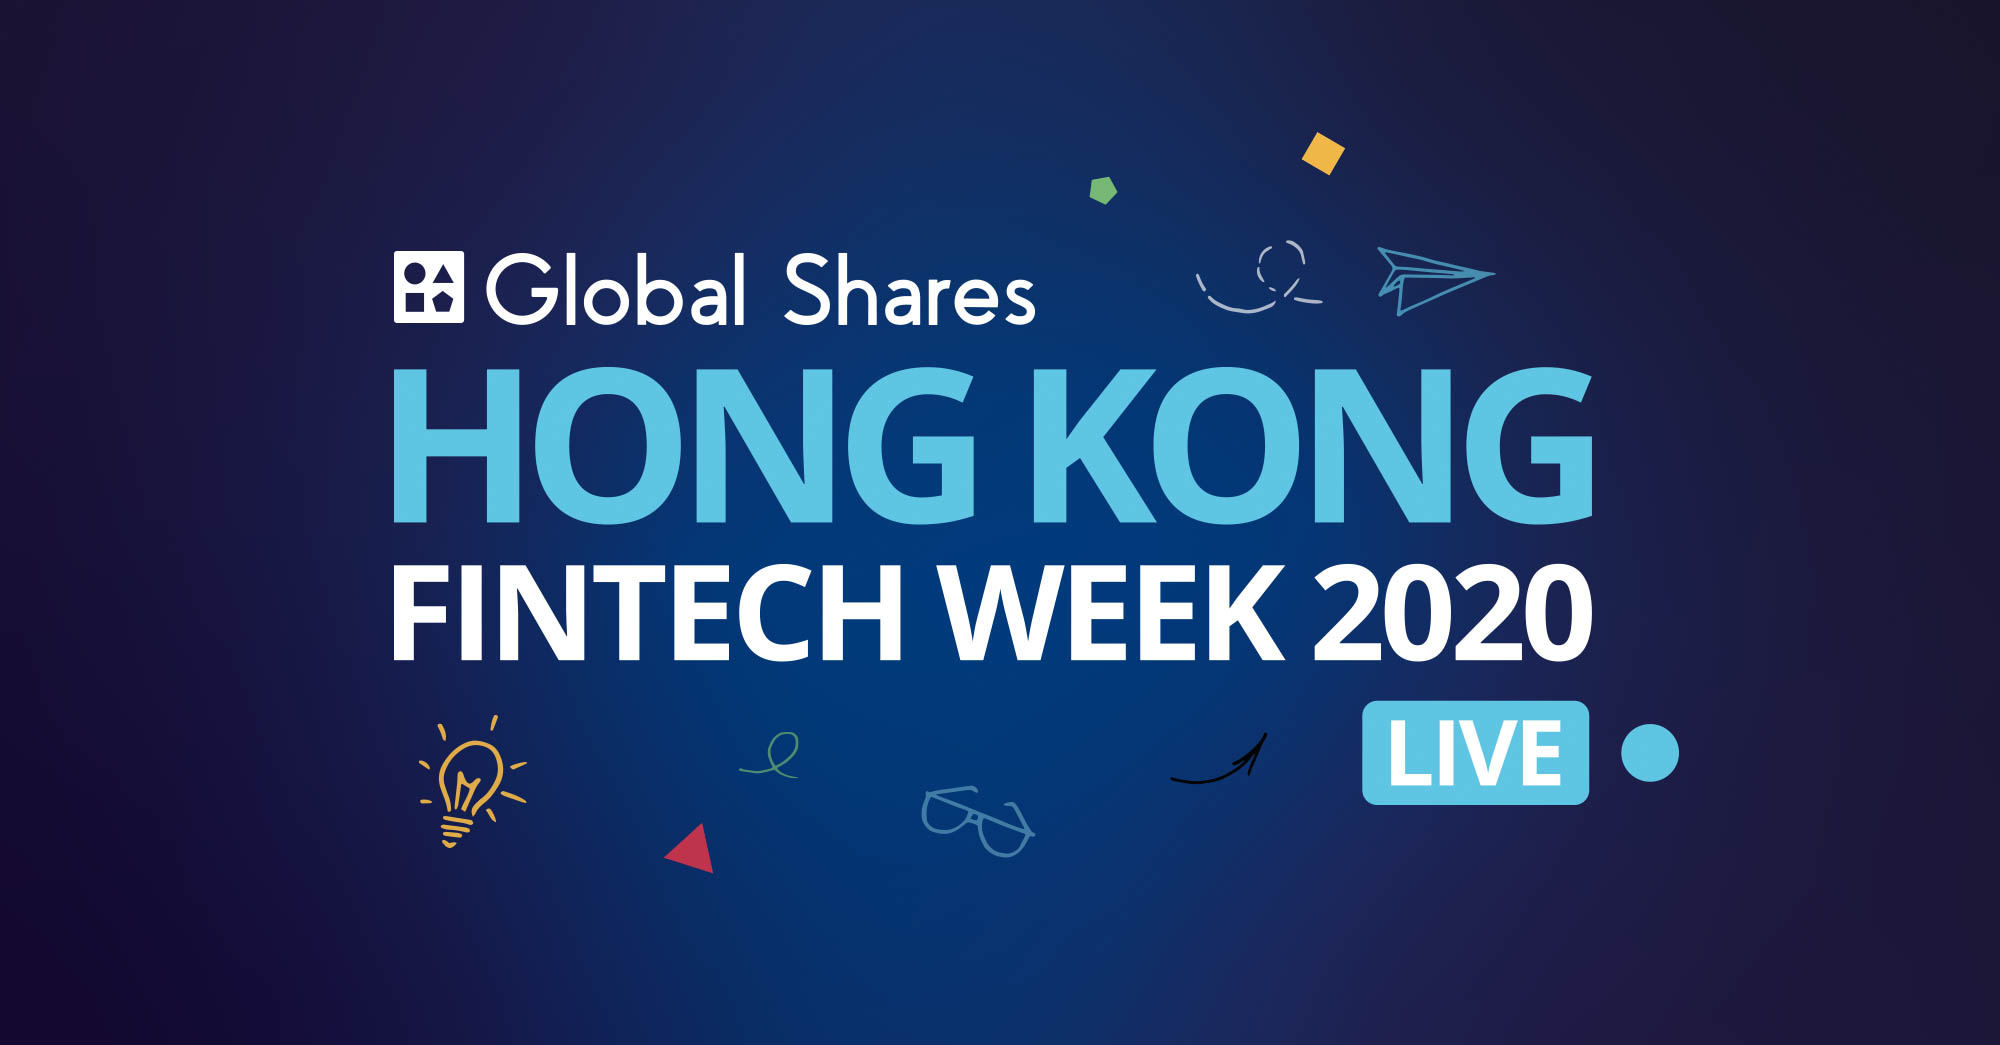 Global Shares at Hong Kong Fintech Week 2020